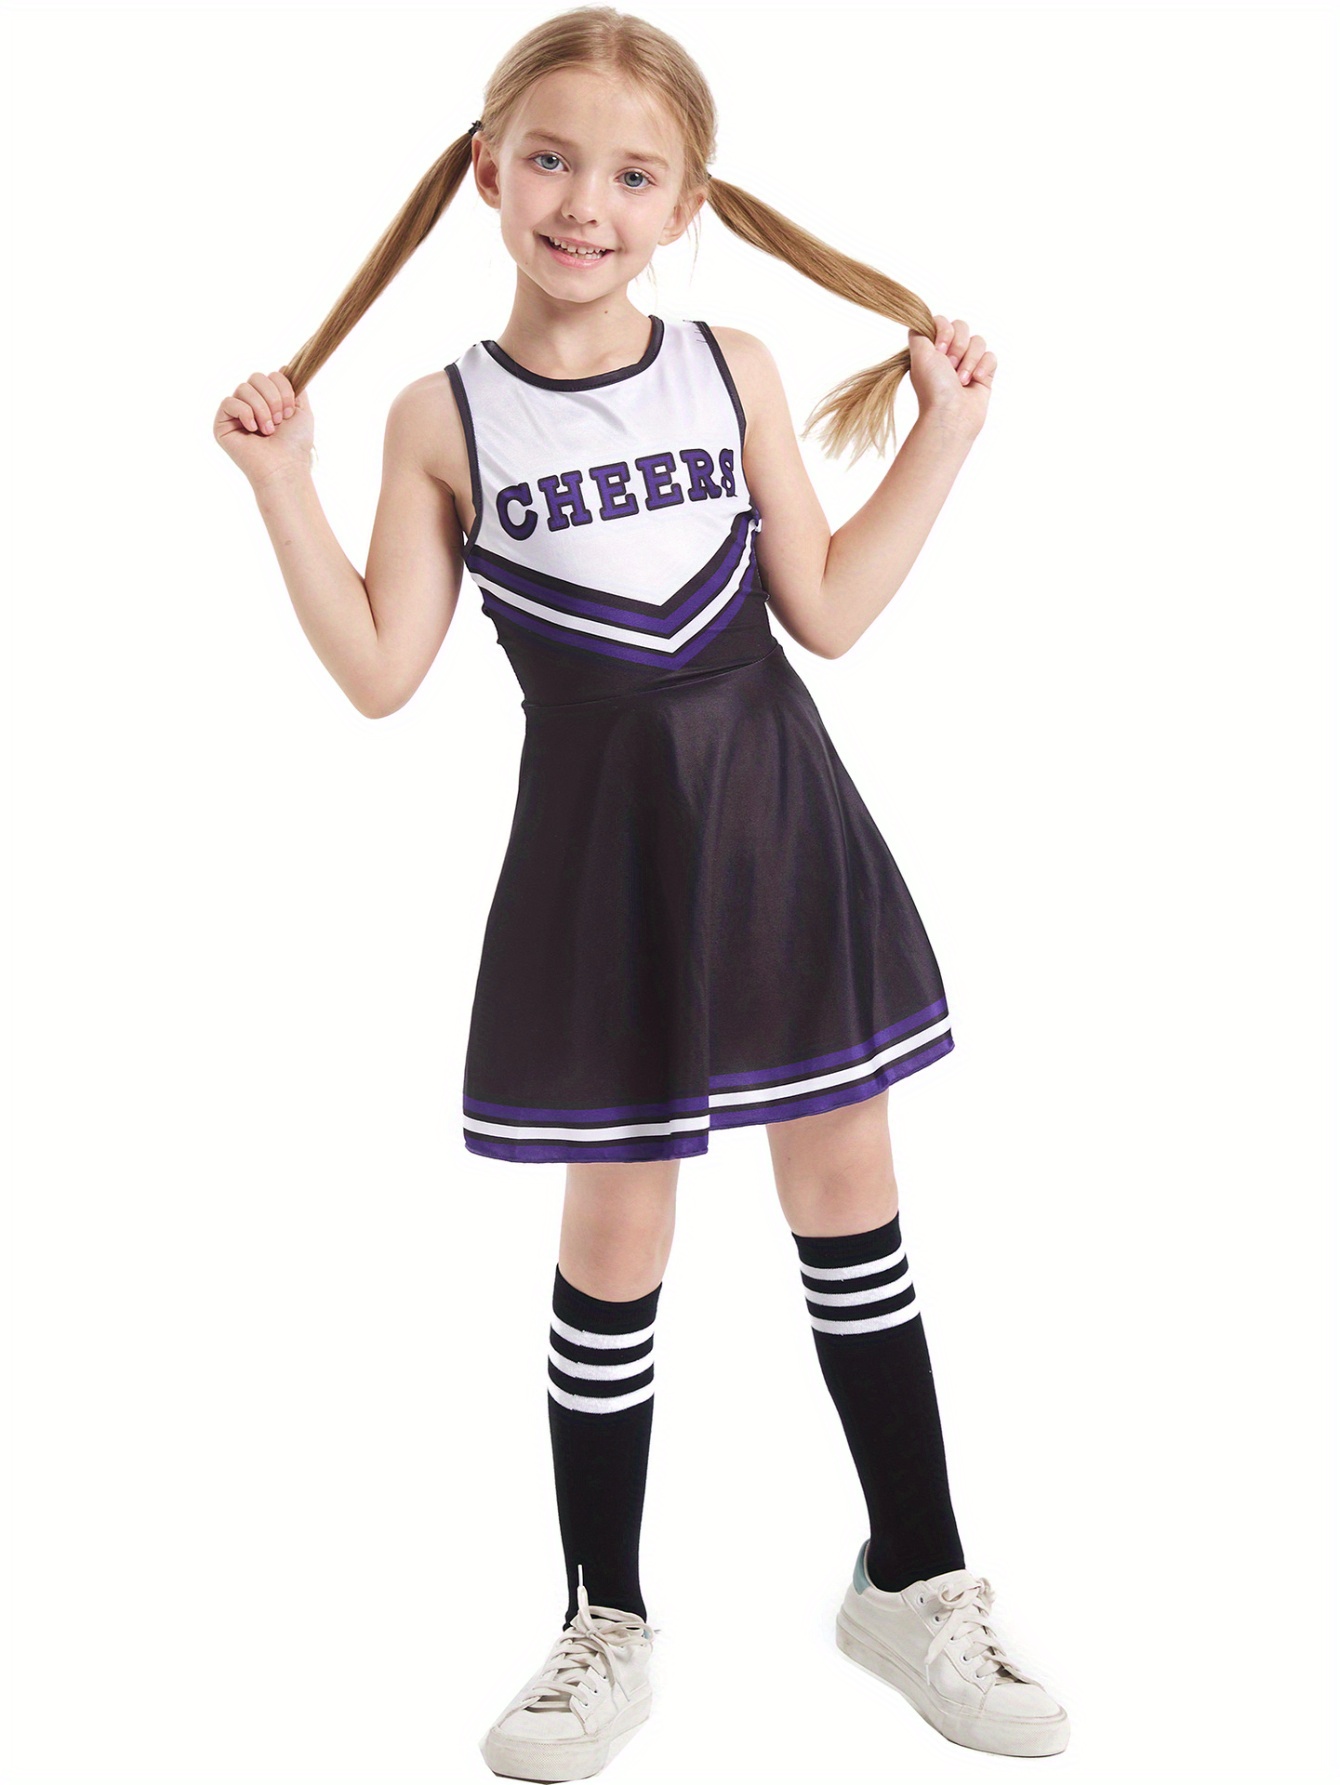 Girls Cheerleading Sleeveless Sports Dress Cheer Uniform